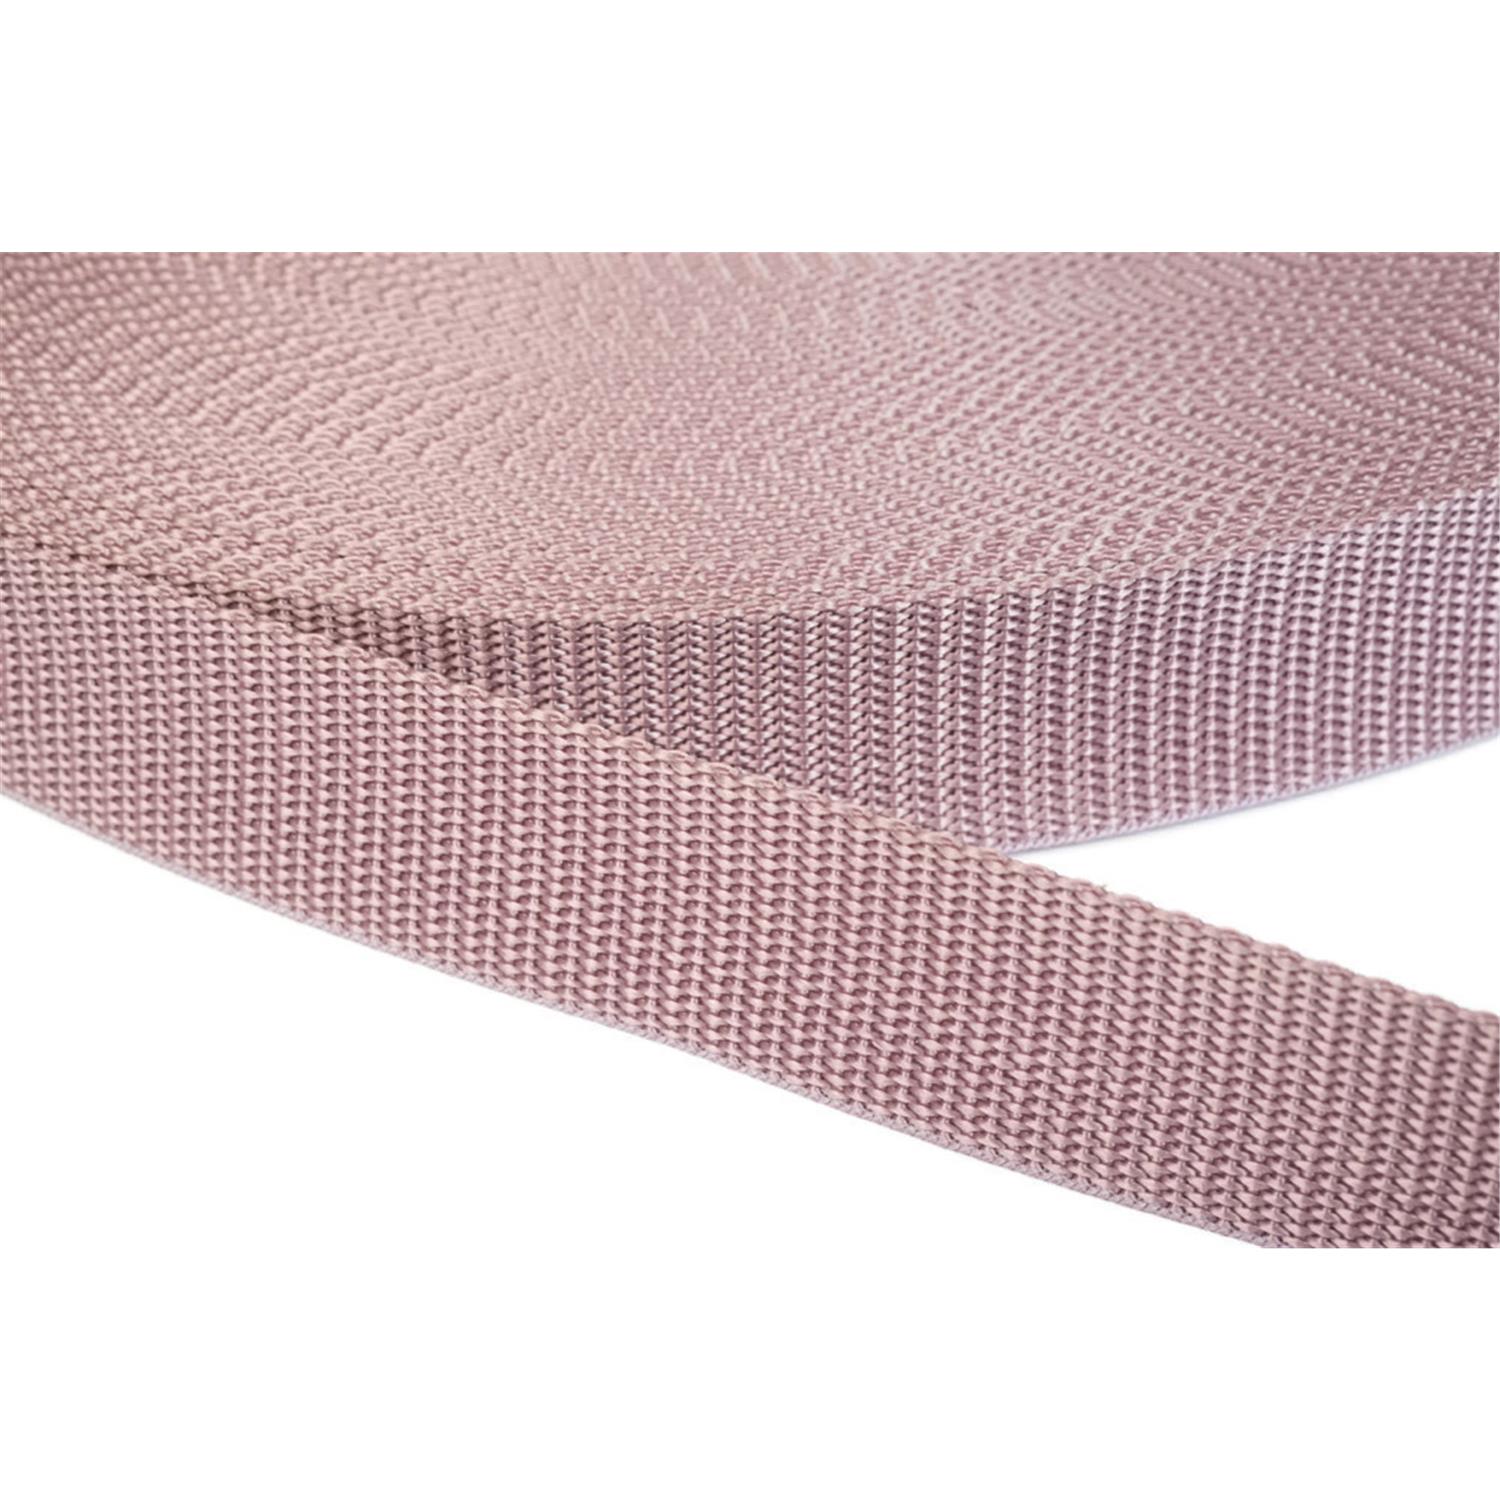 Gurtband 10mm breit aus Polypropylen in 41 Farben 15 - altrosa 50 Meter